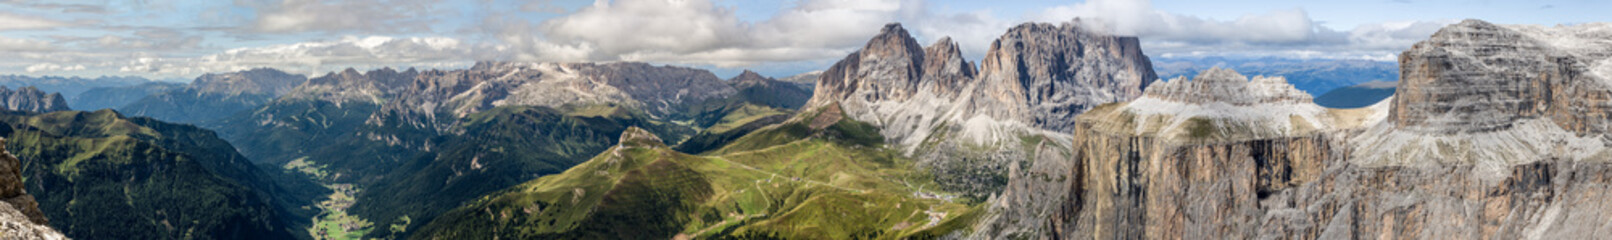 Fototapeta Dolomites Panorama obraz